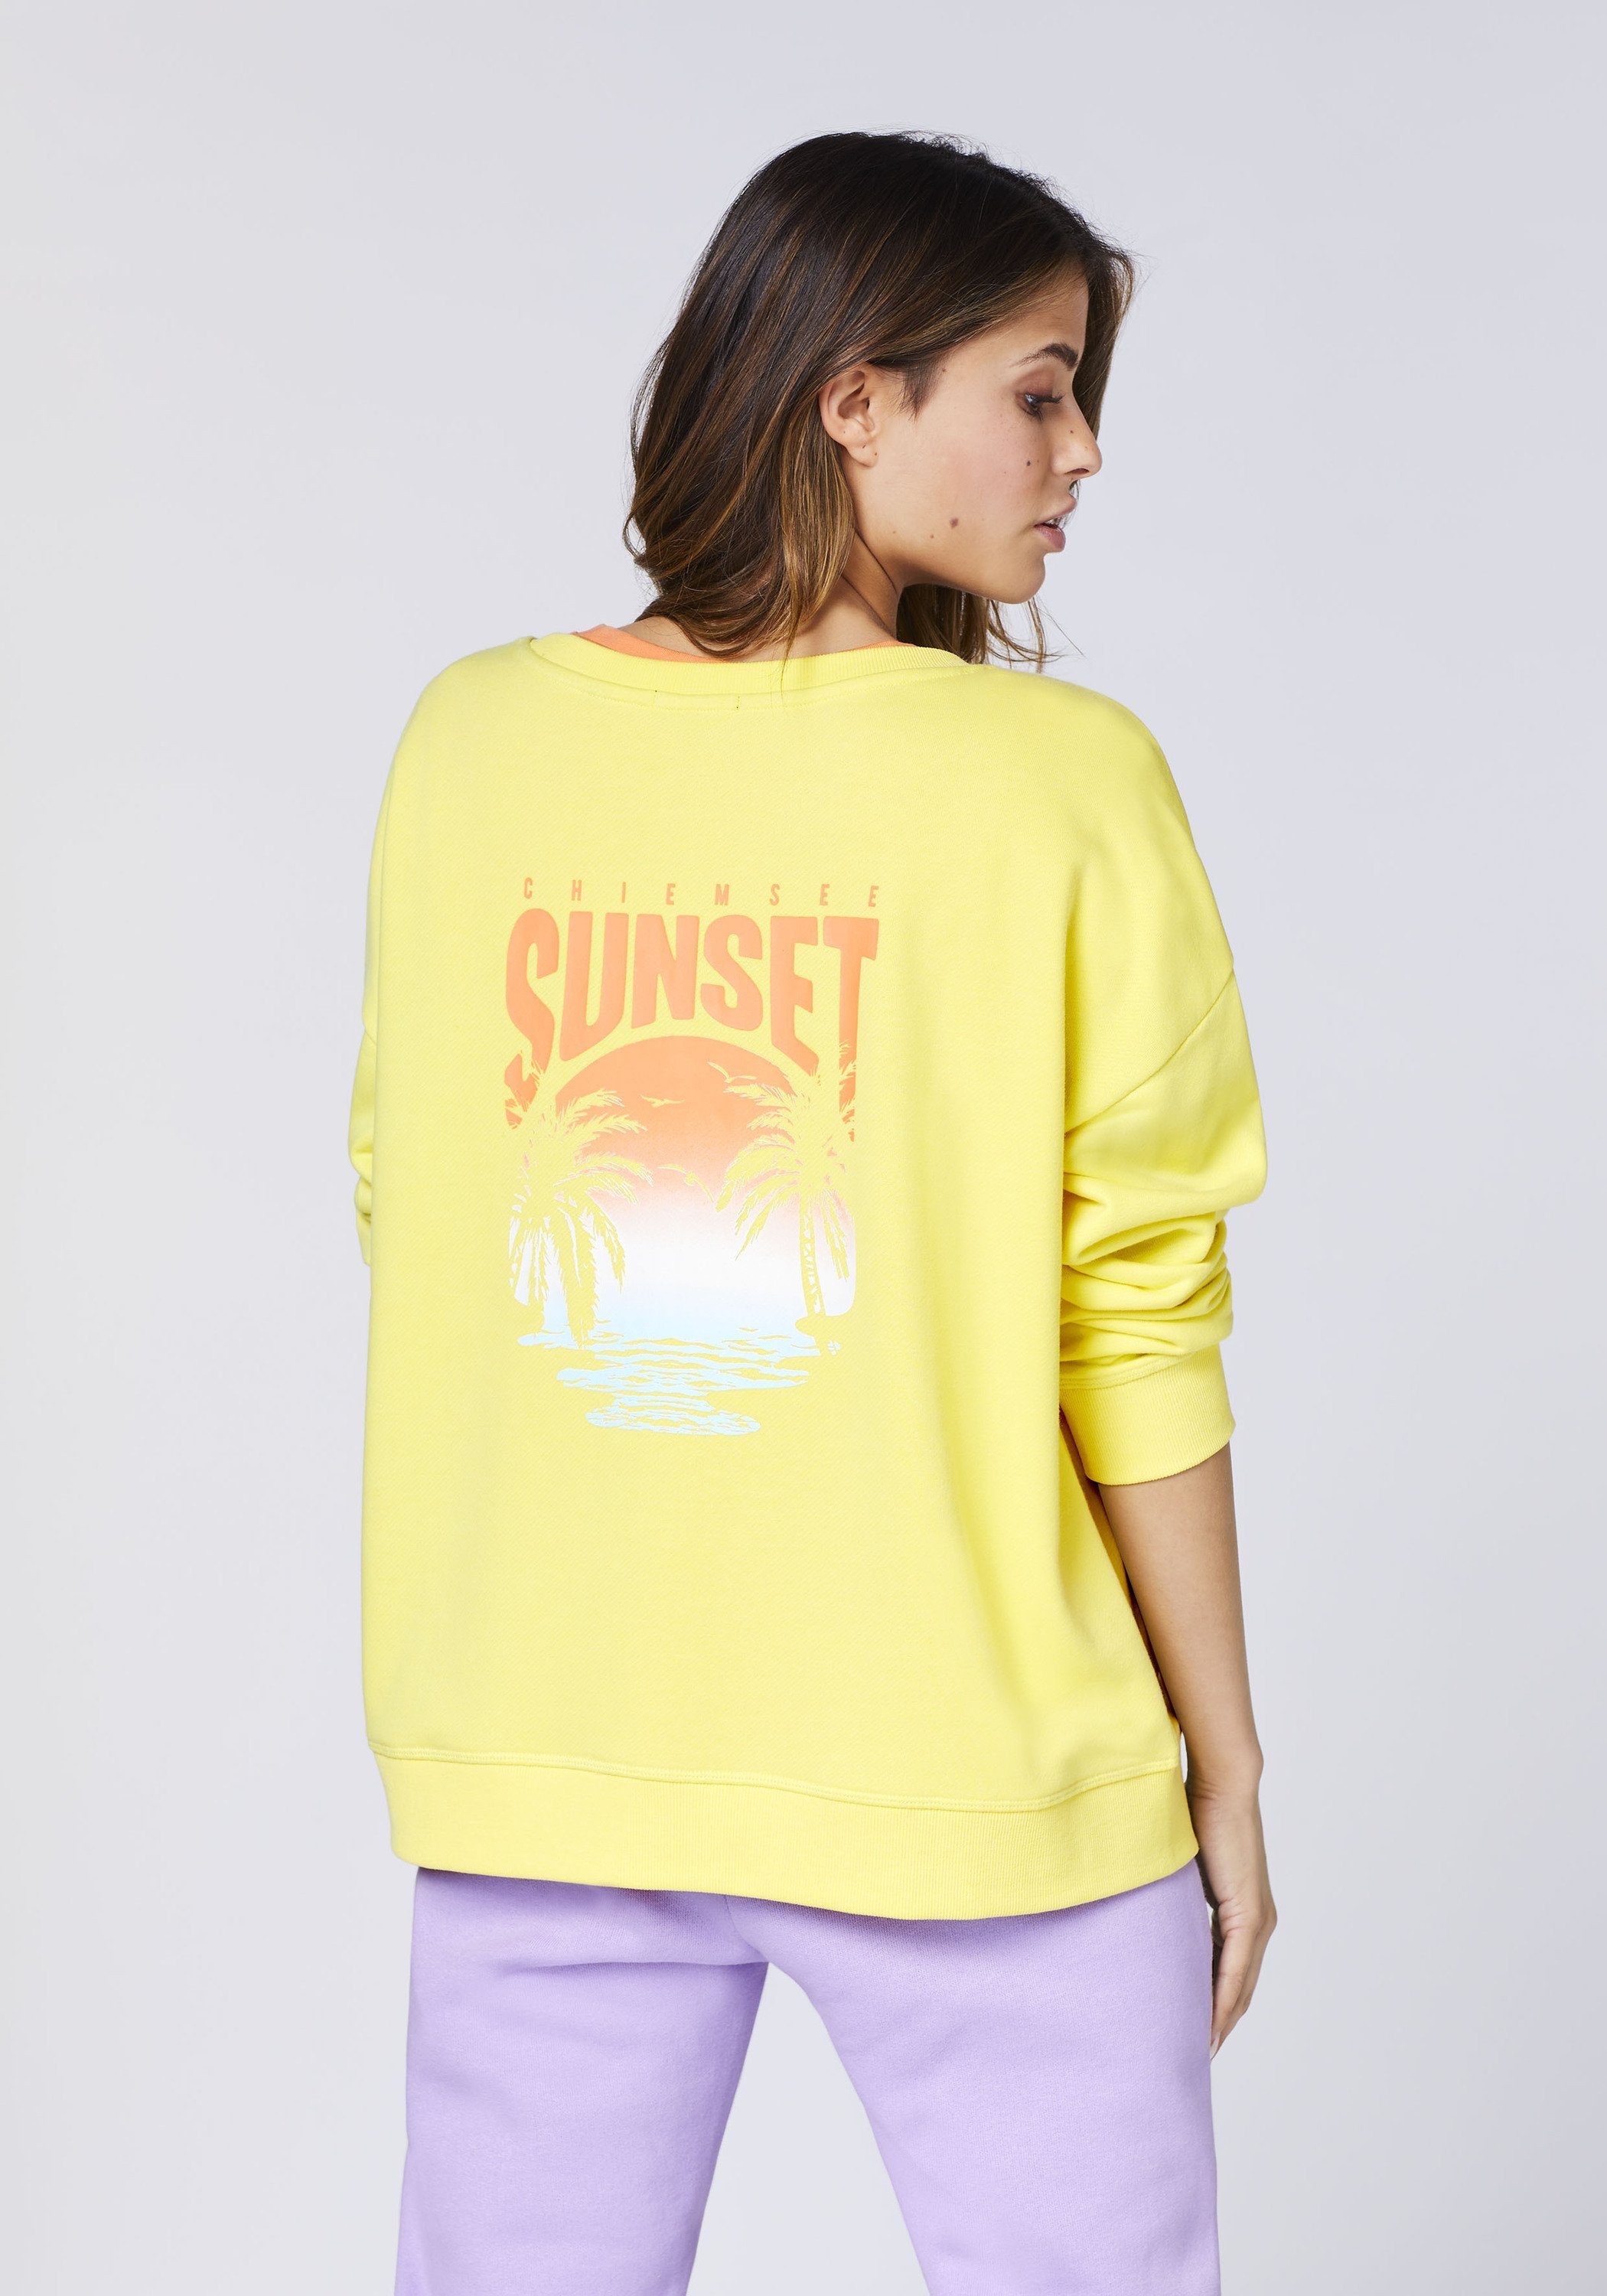 Logo- und Sunset-Motiv 12-0742 Chiemsee LEMON Sweater Sweatshirt 1 VERBENA mit